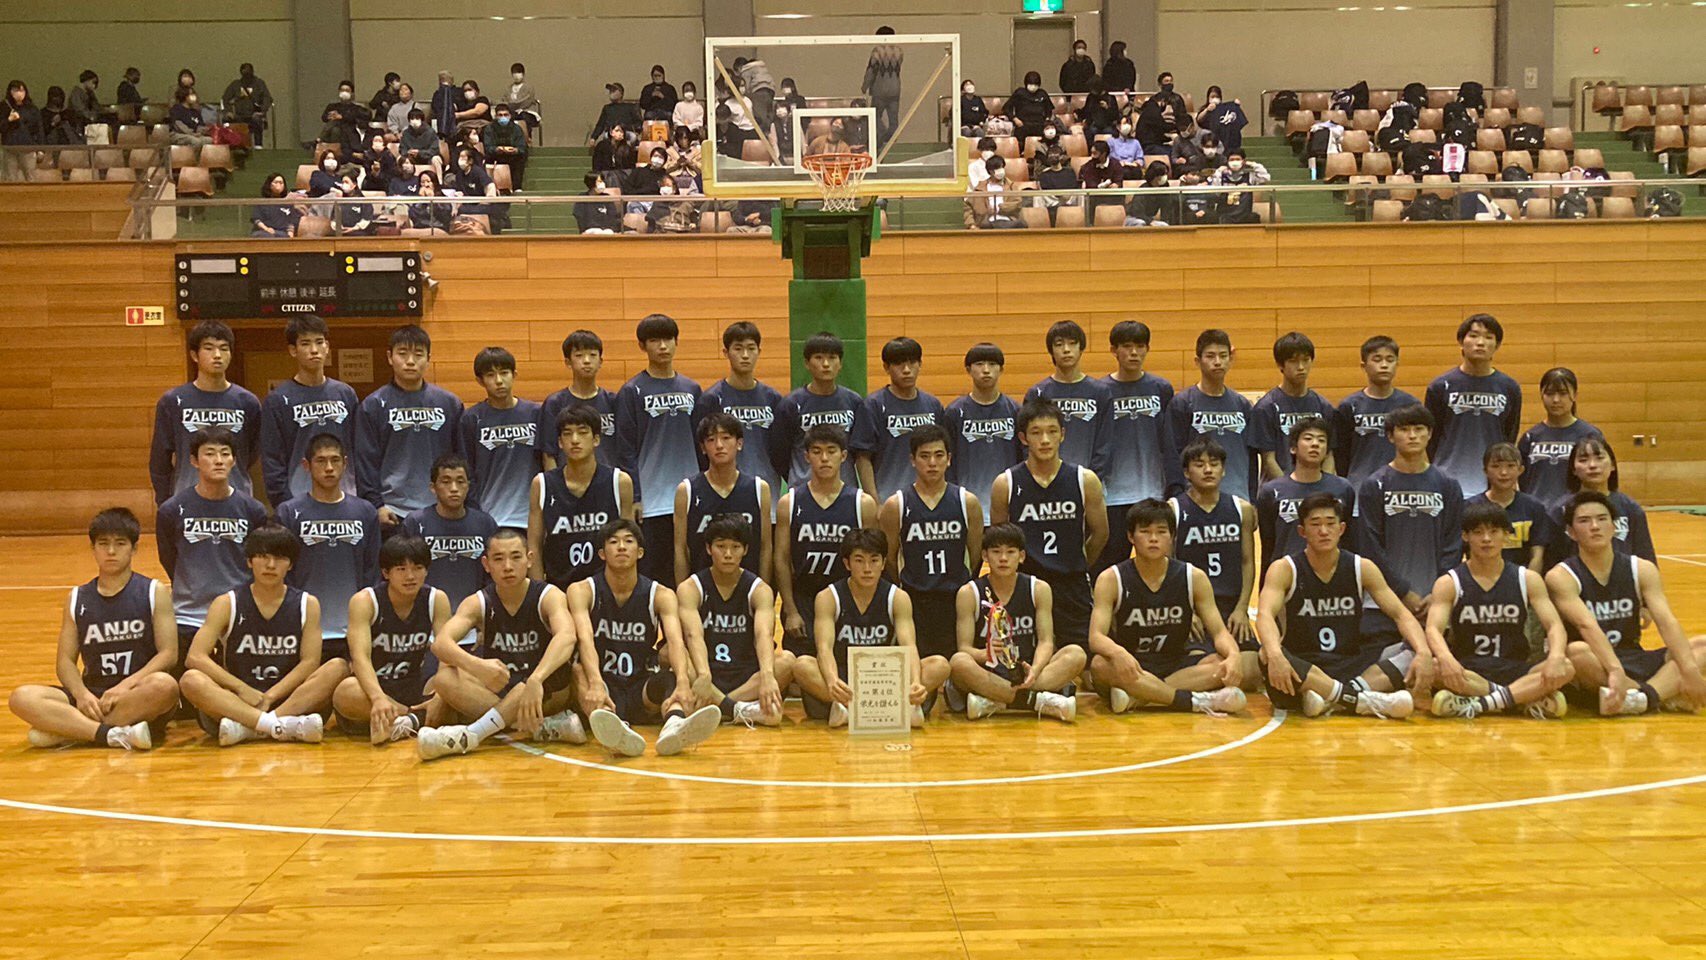 安城学園男子バスケットボール部 Anjogakuenbb Twitter